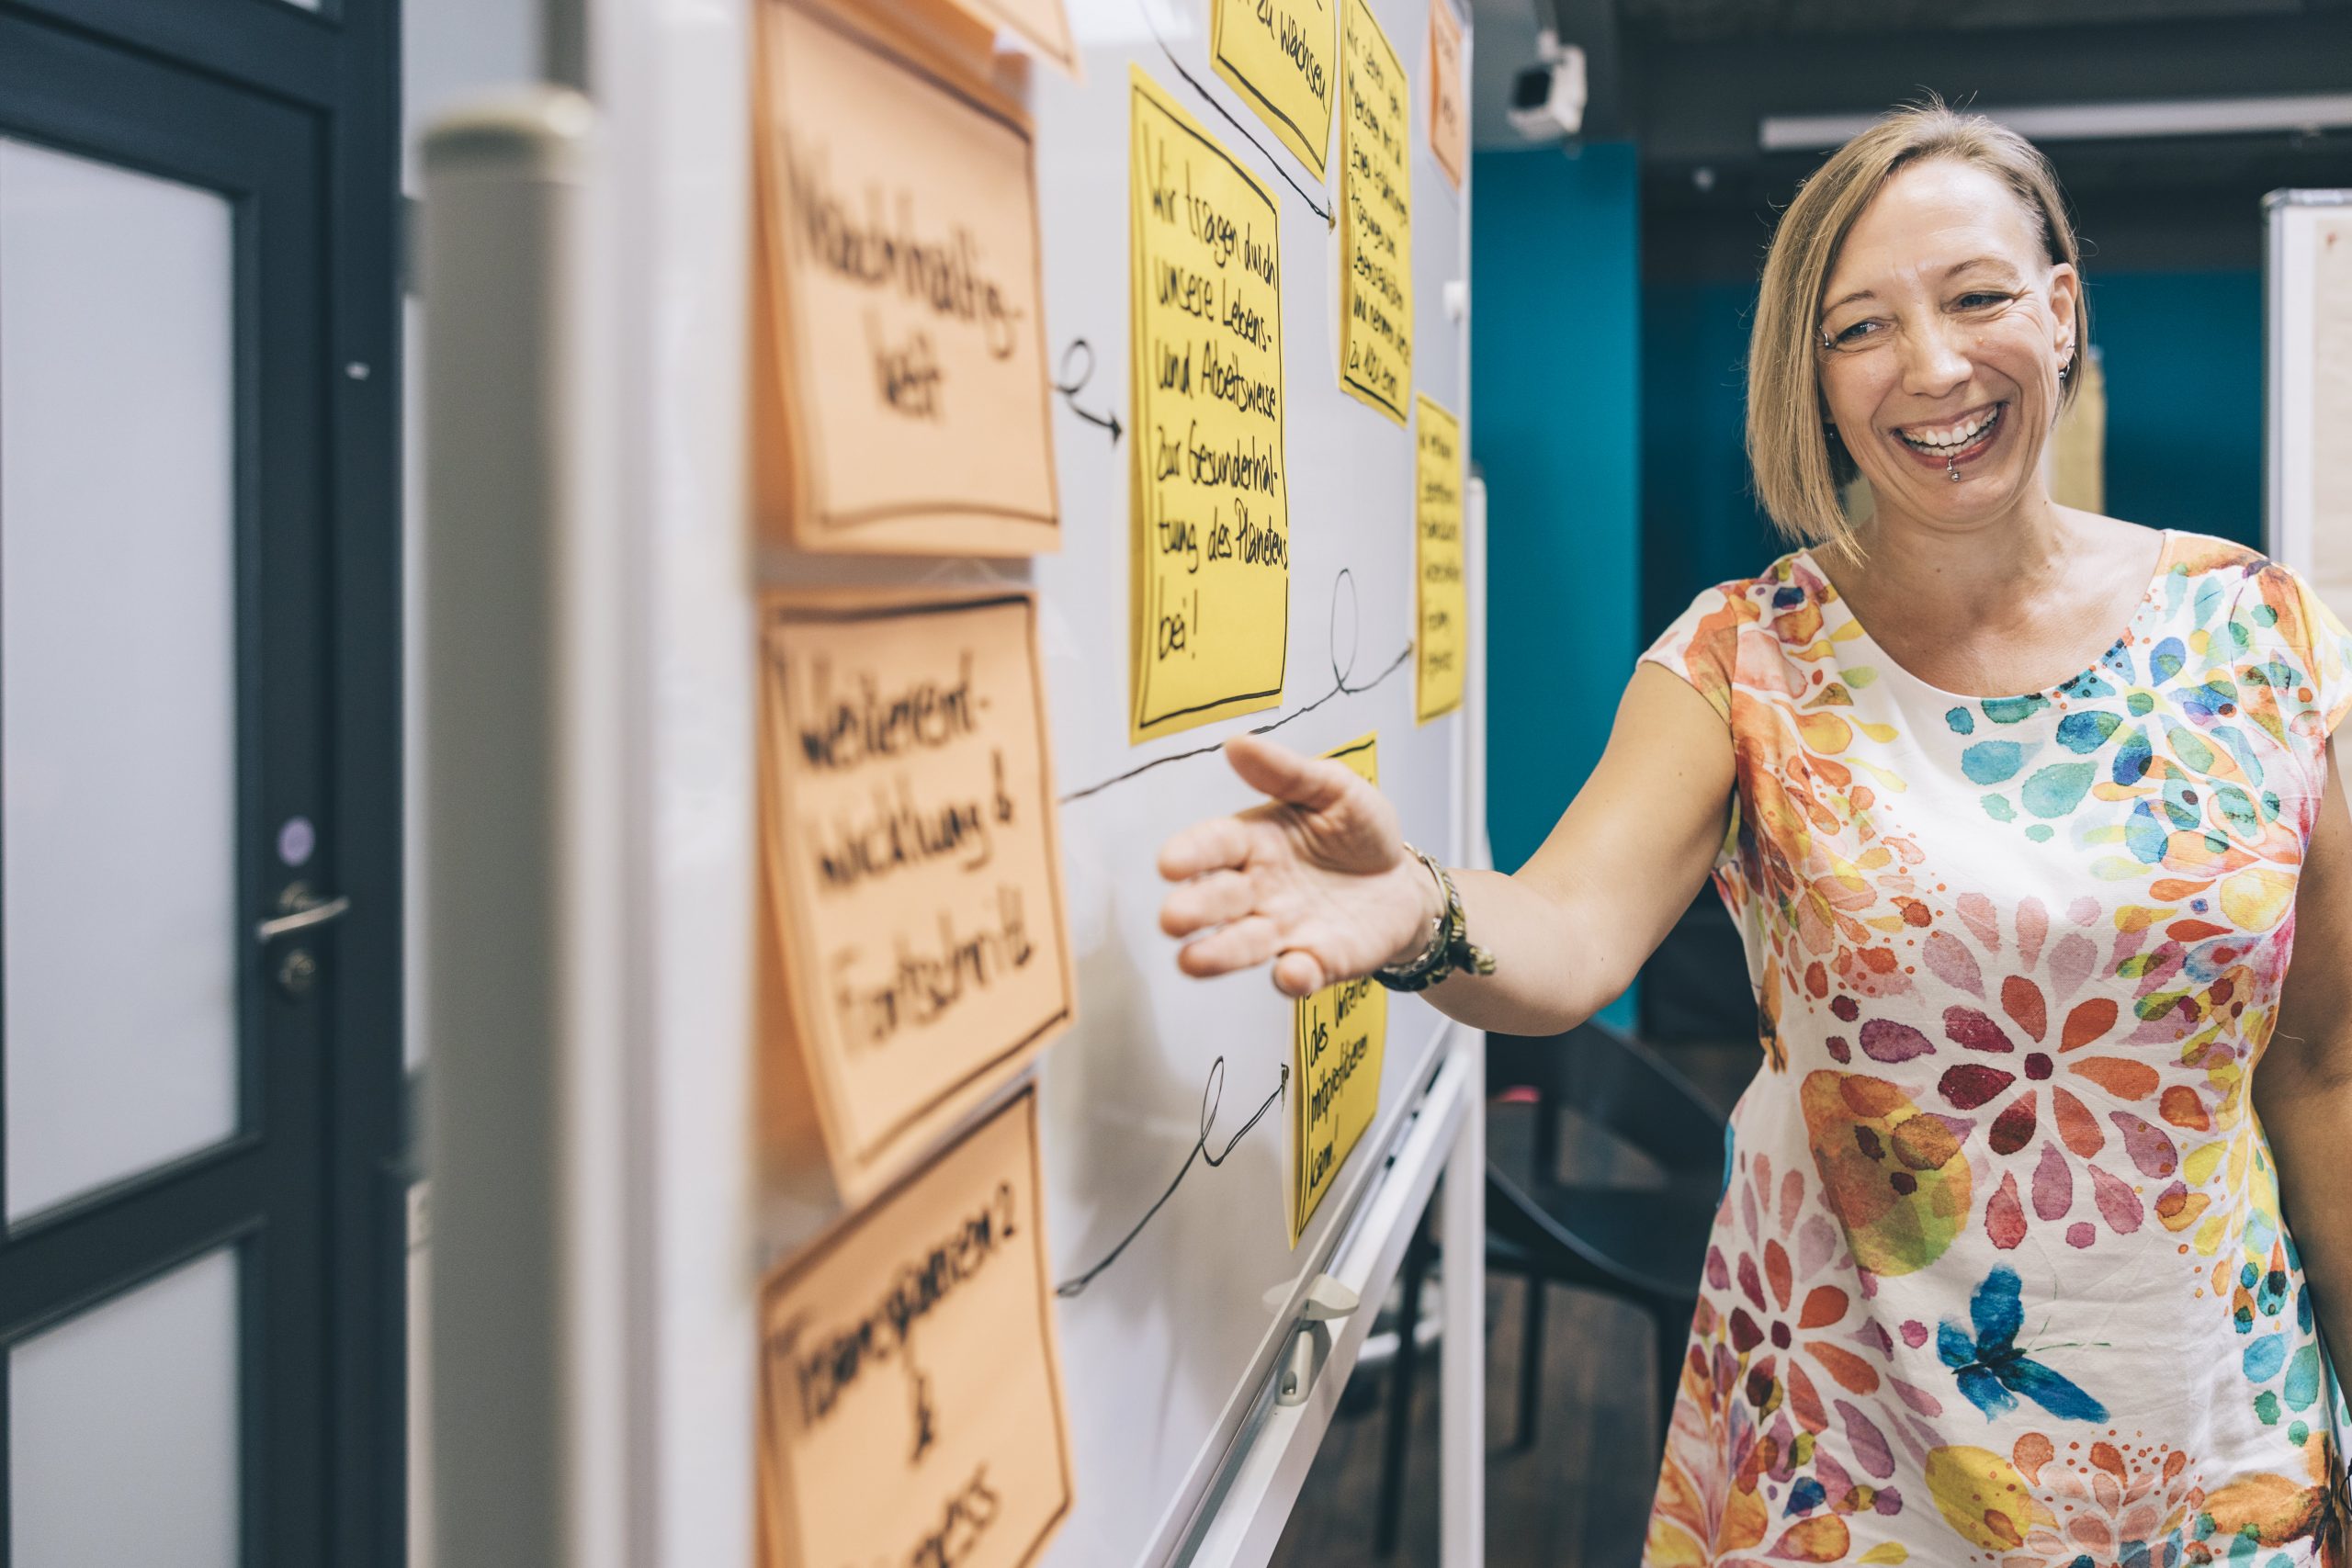 Auf dem Foto ist Heike Maerki aus dem Team von COM ACROSS in einer Workshopsituation abgebildet. Sie zeigt lachend auf einen Post-It auf einer Moderationswand.